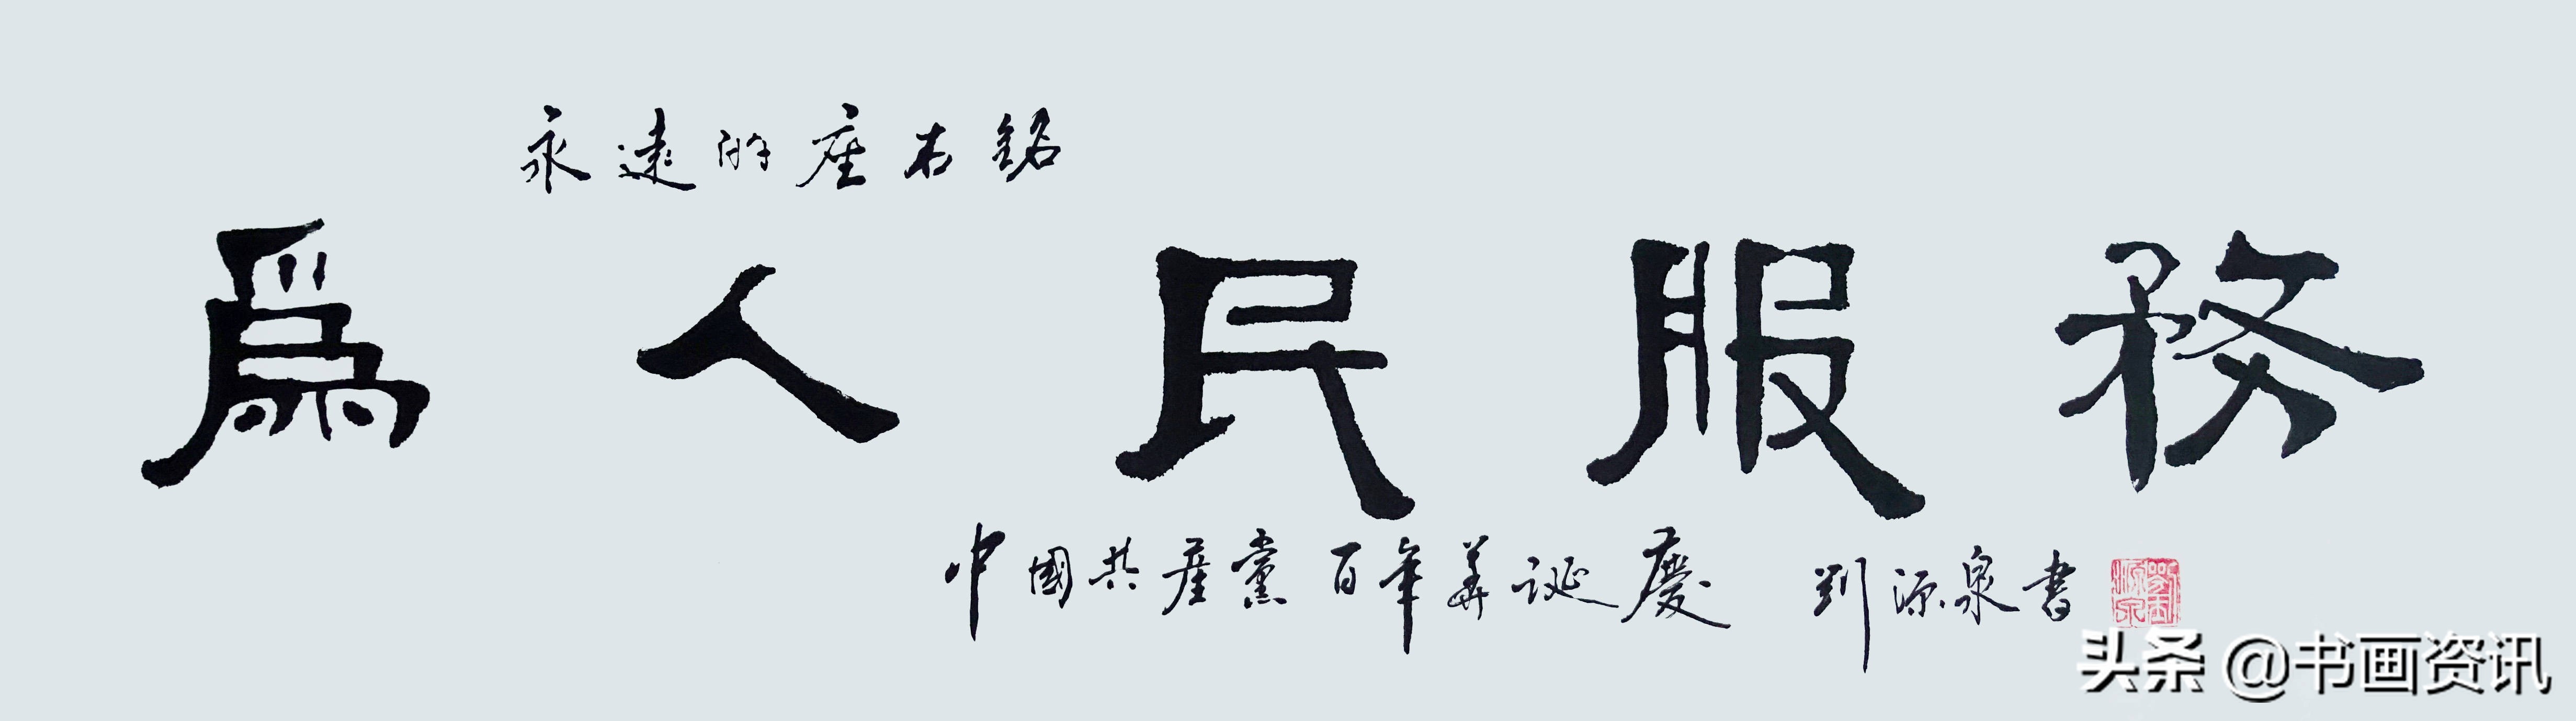 不忘初心｜当代书画名家刘源泉—献礼建党100周年作品展